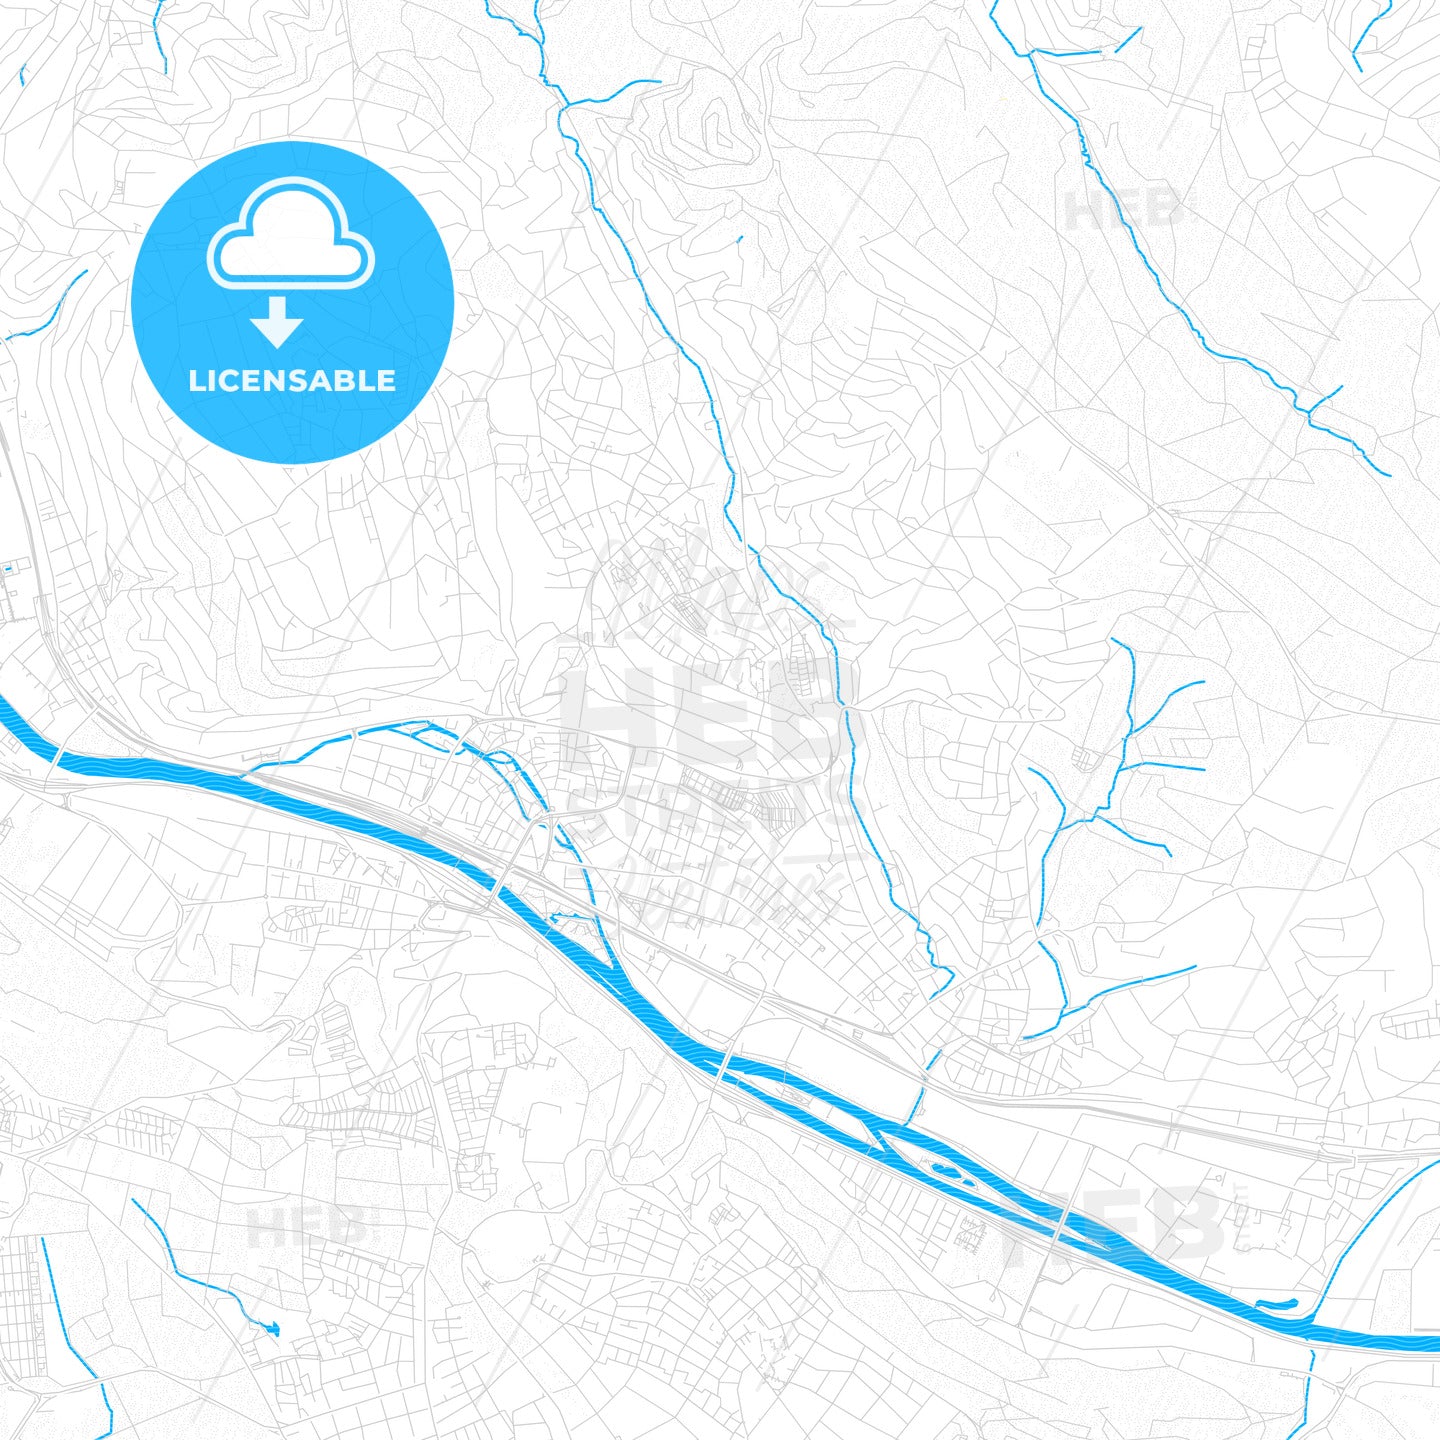 Esslingen am Neckar, Germany PDF vector map with water in focus